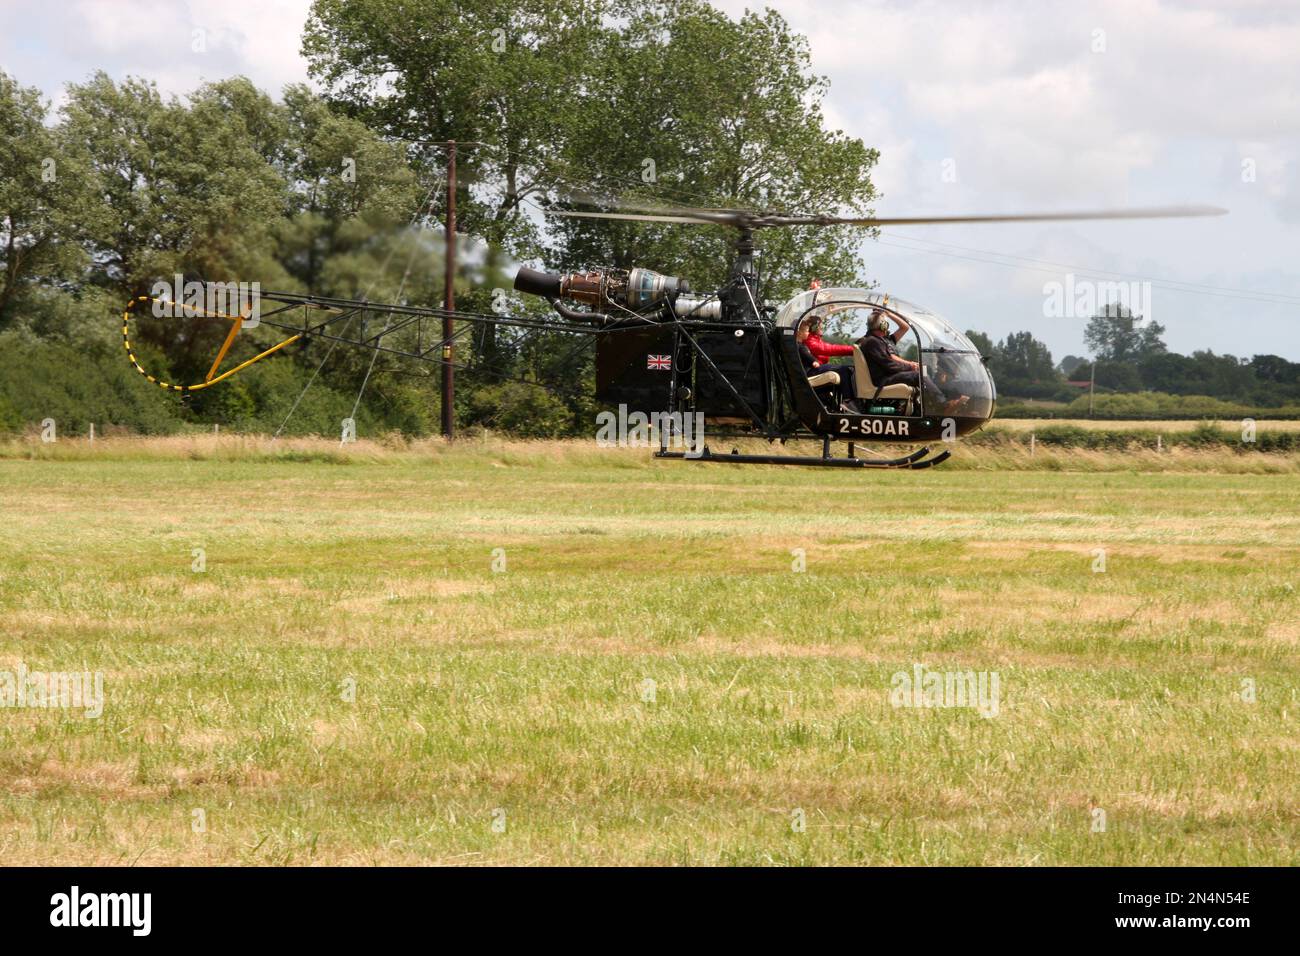 Un hélicoptère Aeropatiale sa-315/318 Alouette dans un aérodrome privé de East Sussex Banque D'Images